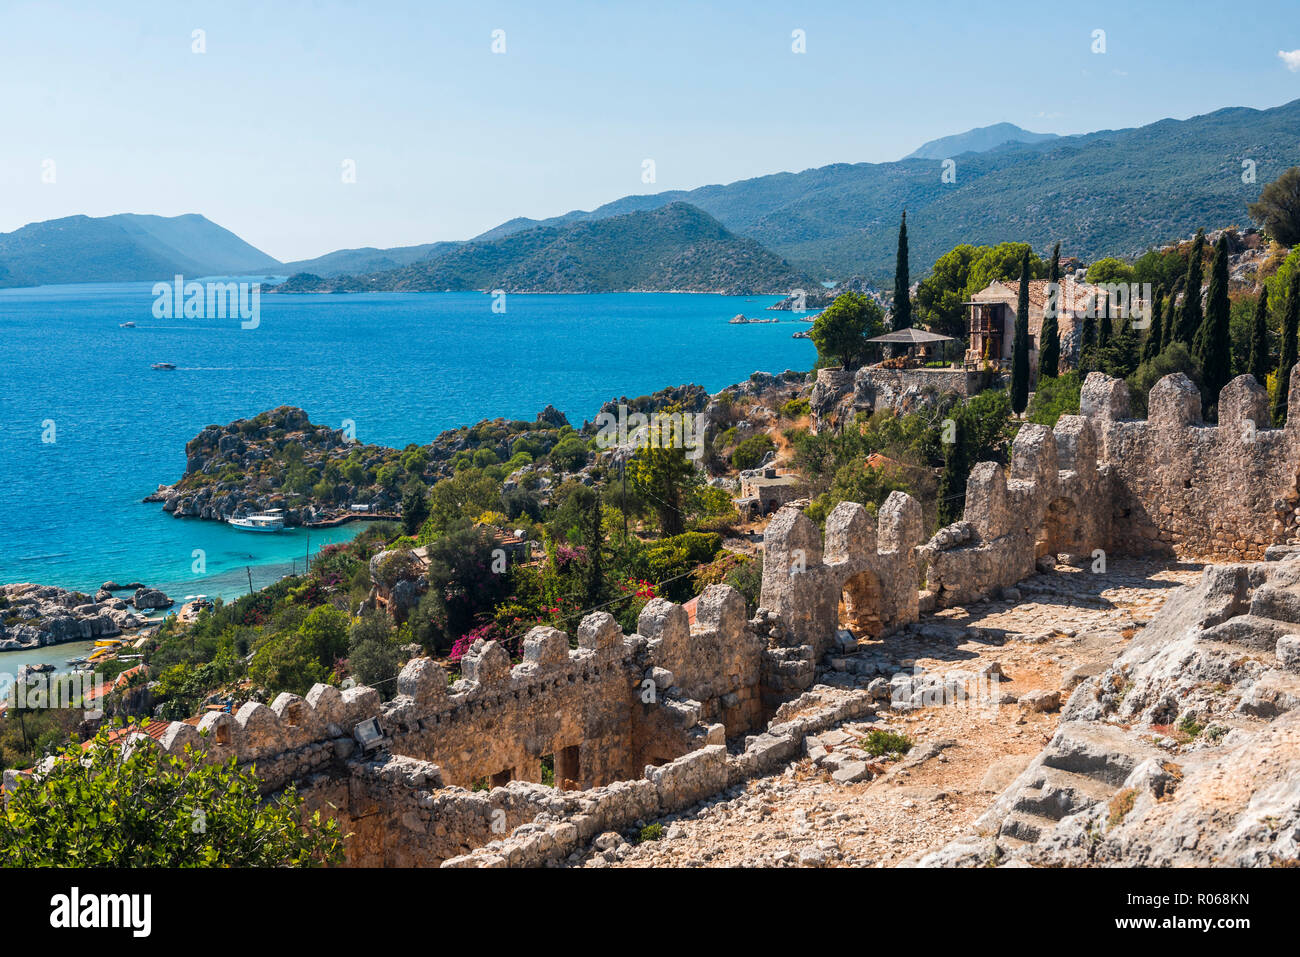 Blick von der Burg über Simena Kekova Bay und die Insel, Provinz Antalya, Lykien, Anatolien, Mittelmeer, Türkei, Kleinasien, Eurasien Stockfoto